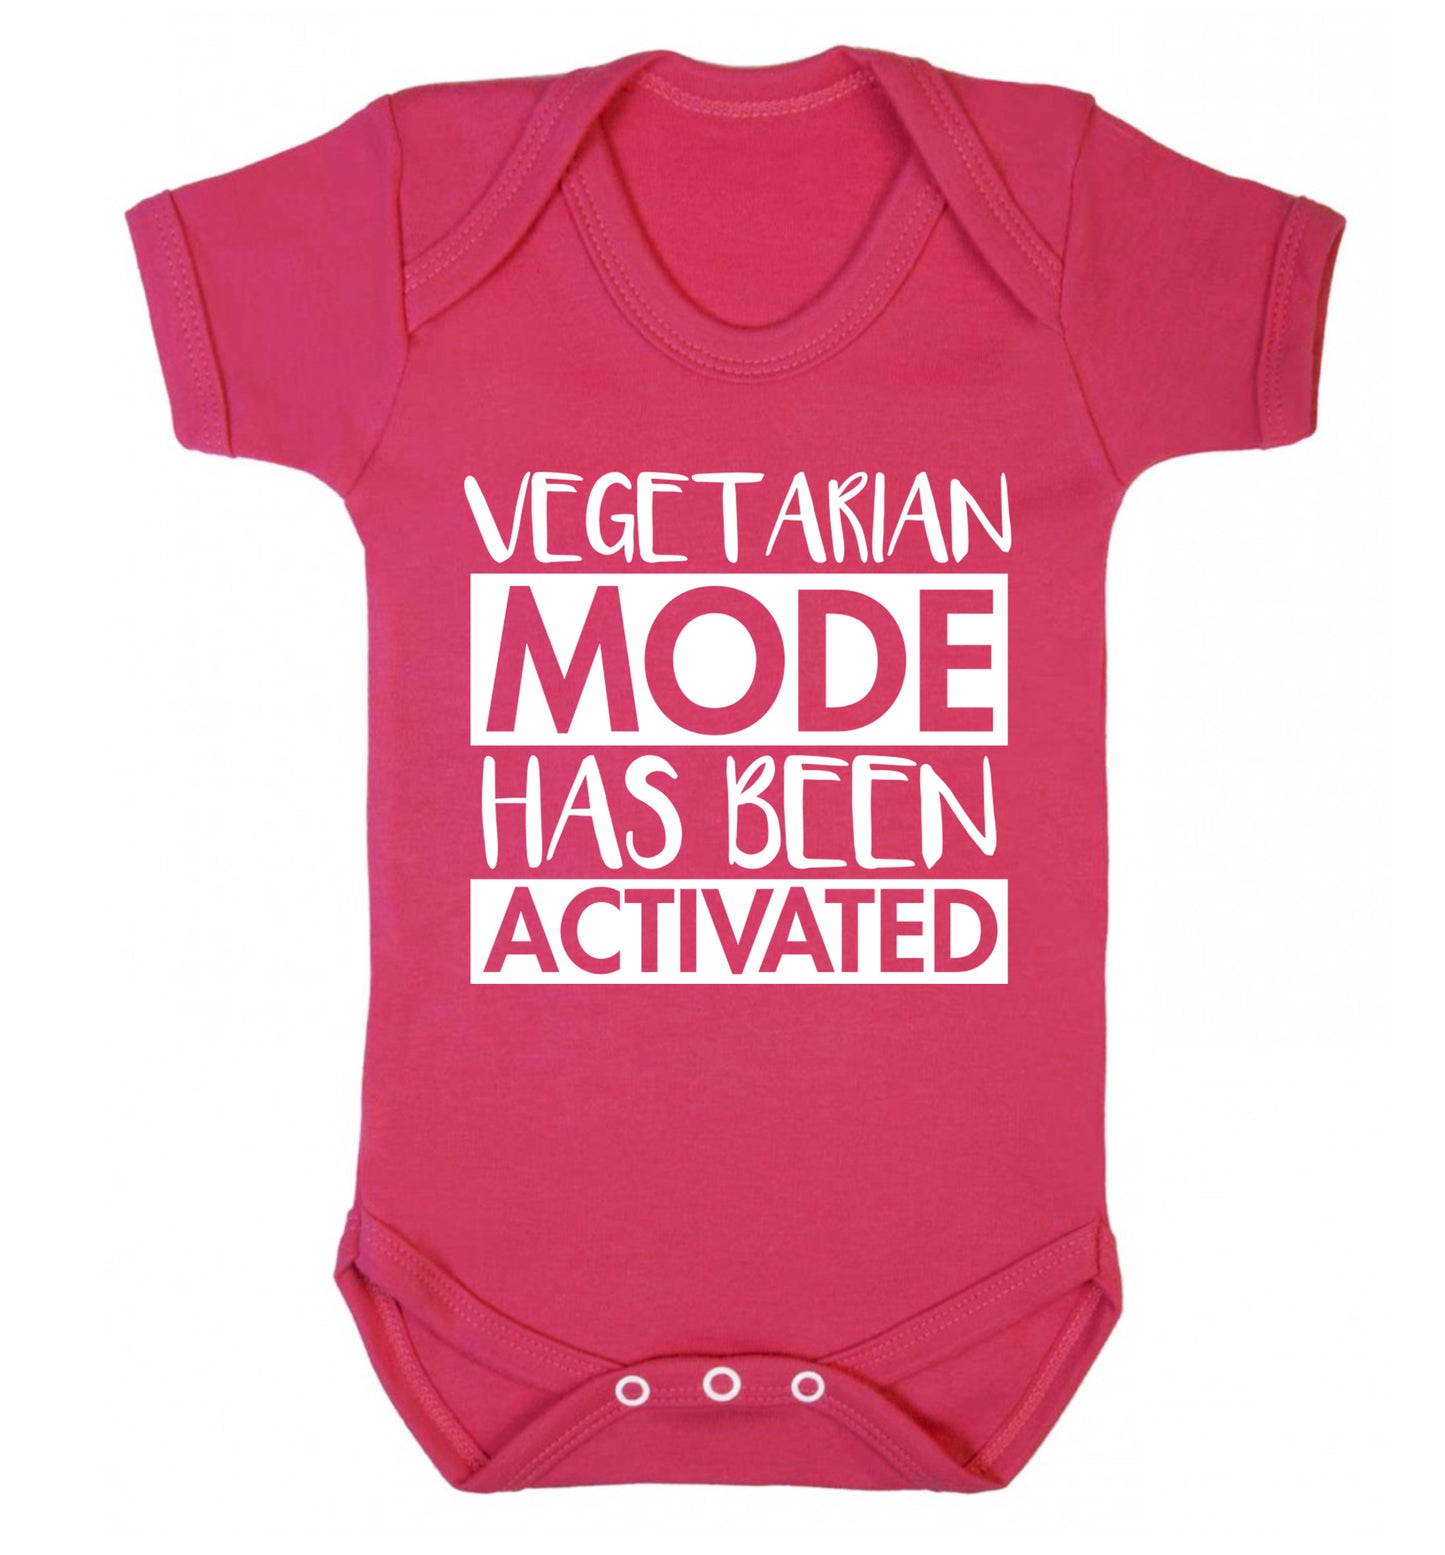 Vegetarian mode activated Baby Vest dark pink 18-24 months